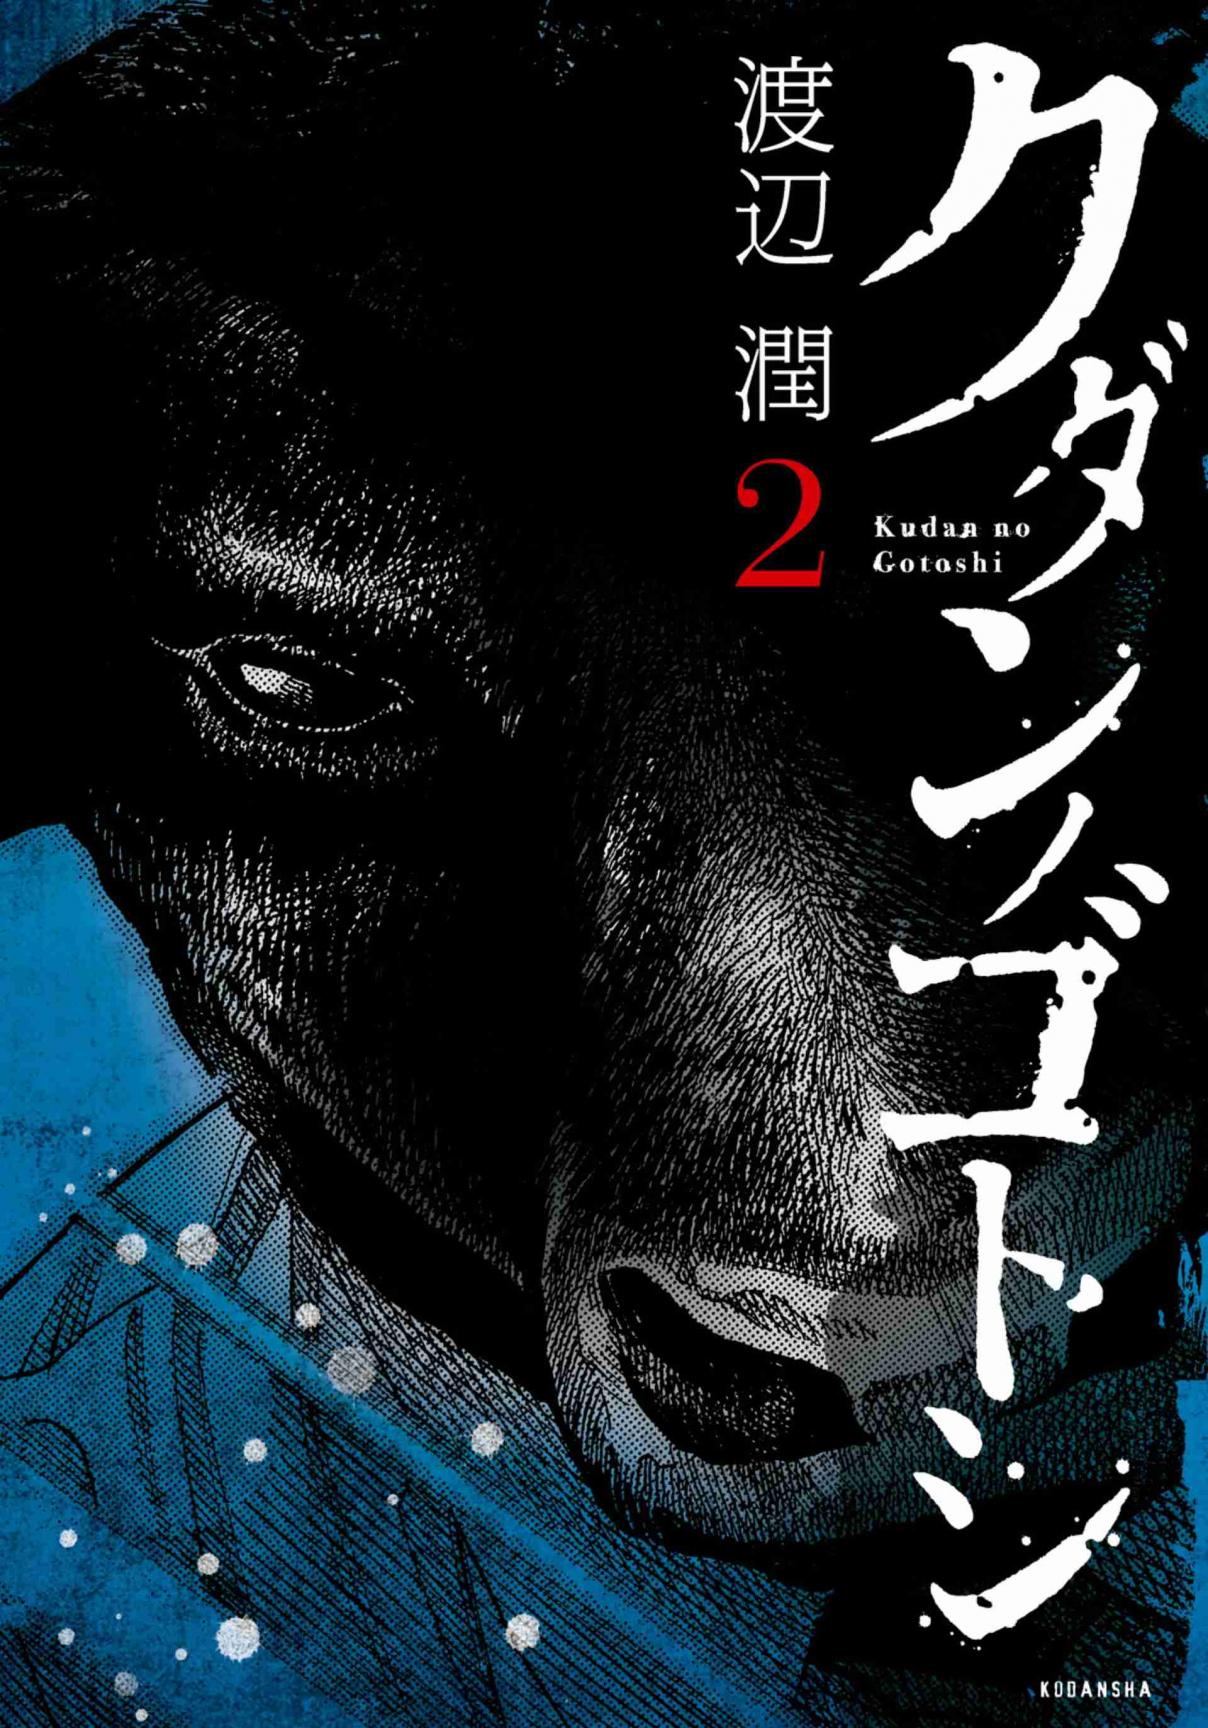 Kudan no Gotoshi Vol. 2 Ch. 13 Ayumi Baba < Part 7 >